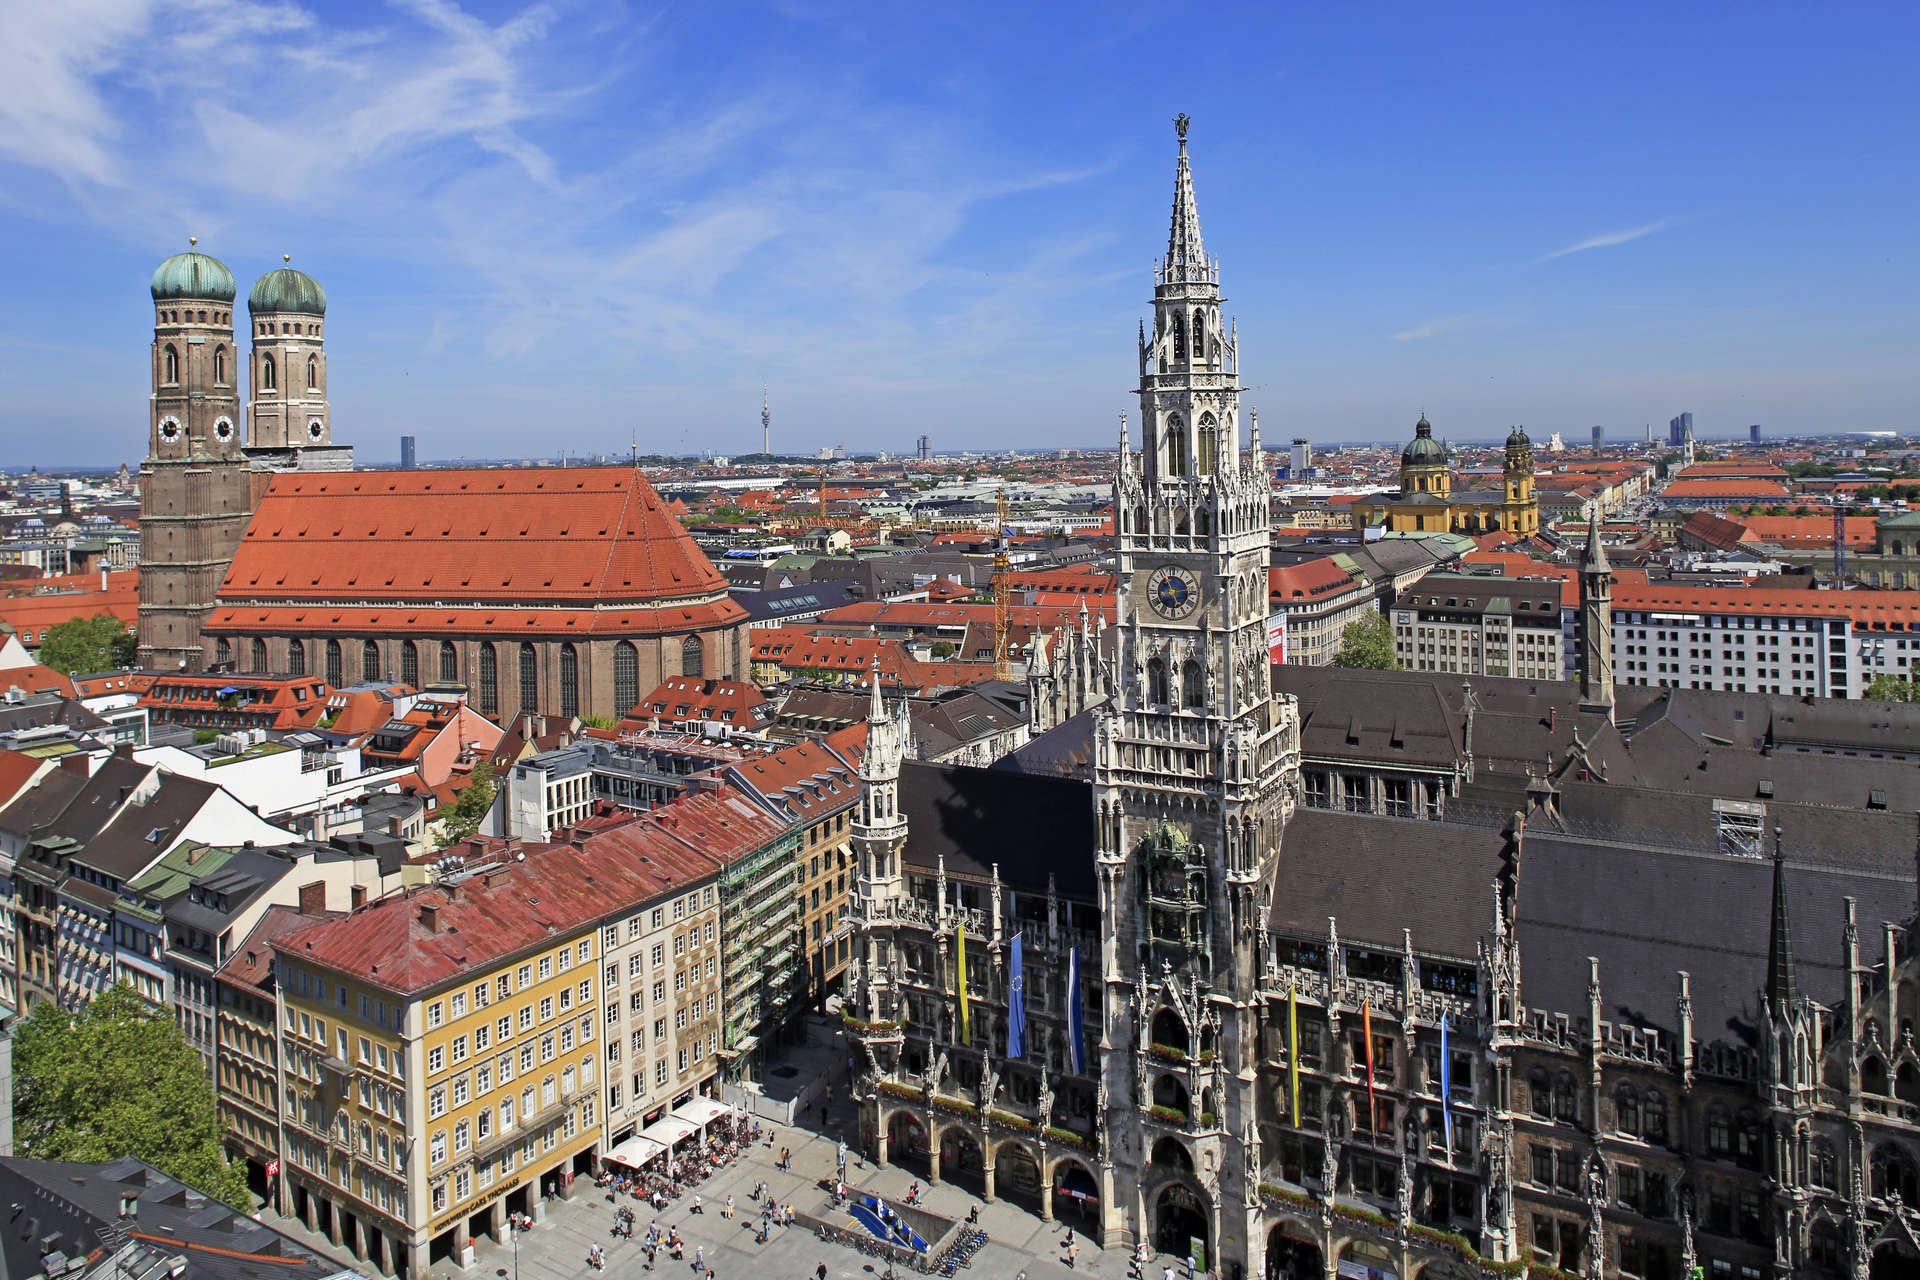 Munich's Marienplatz is considered the heart of Munich